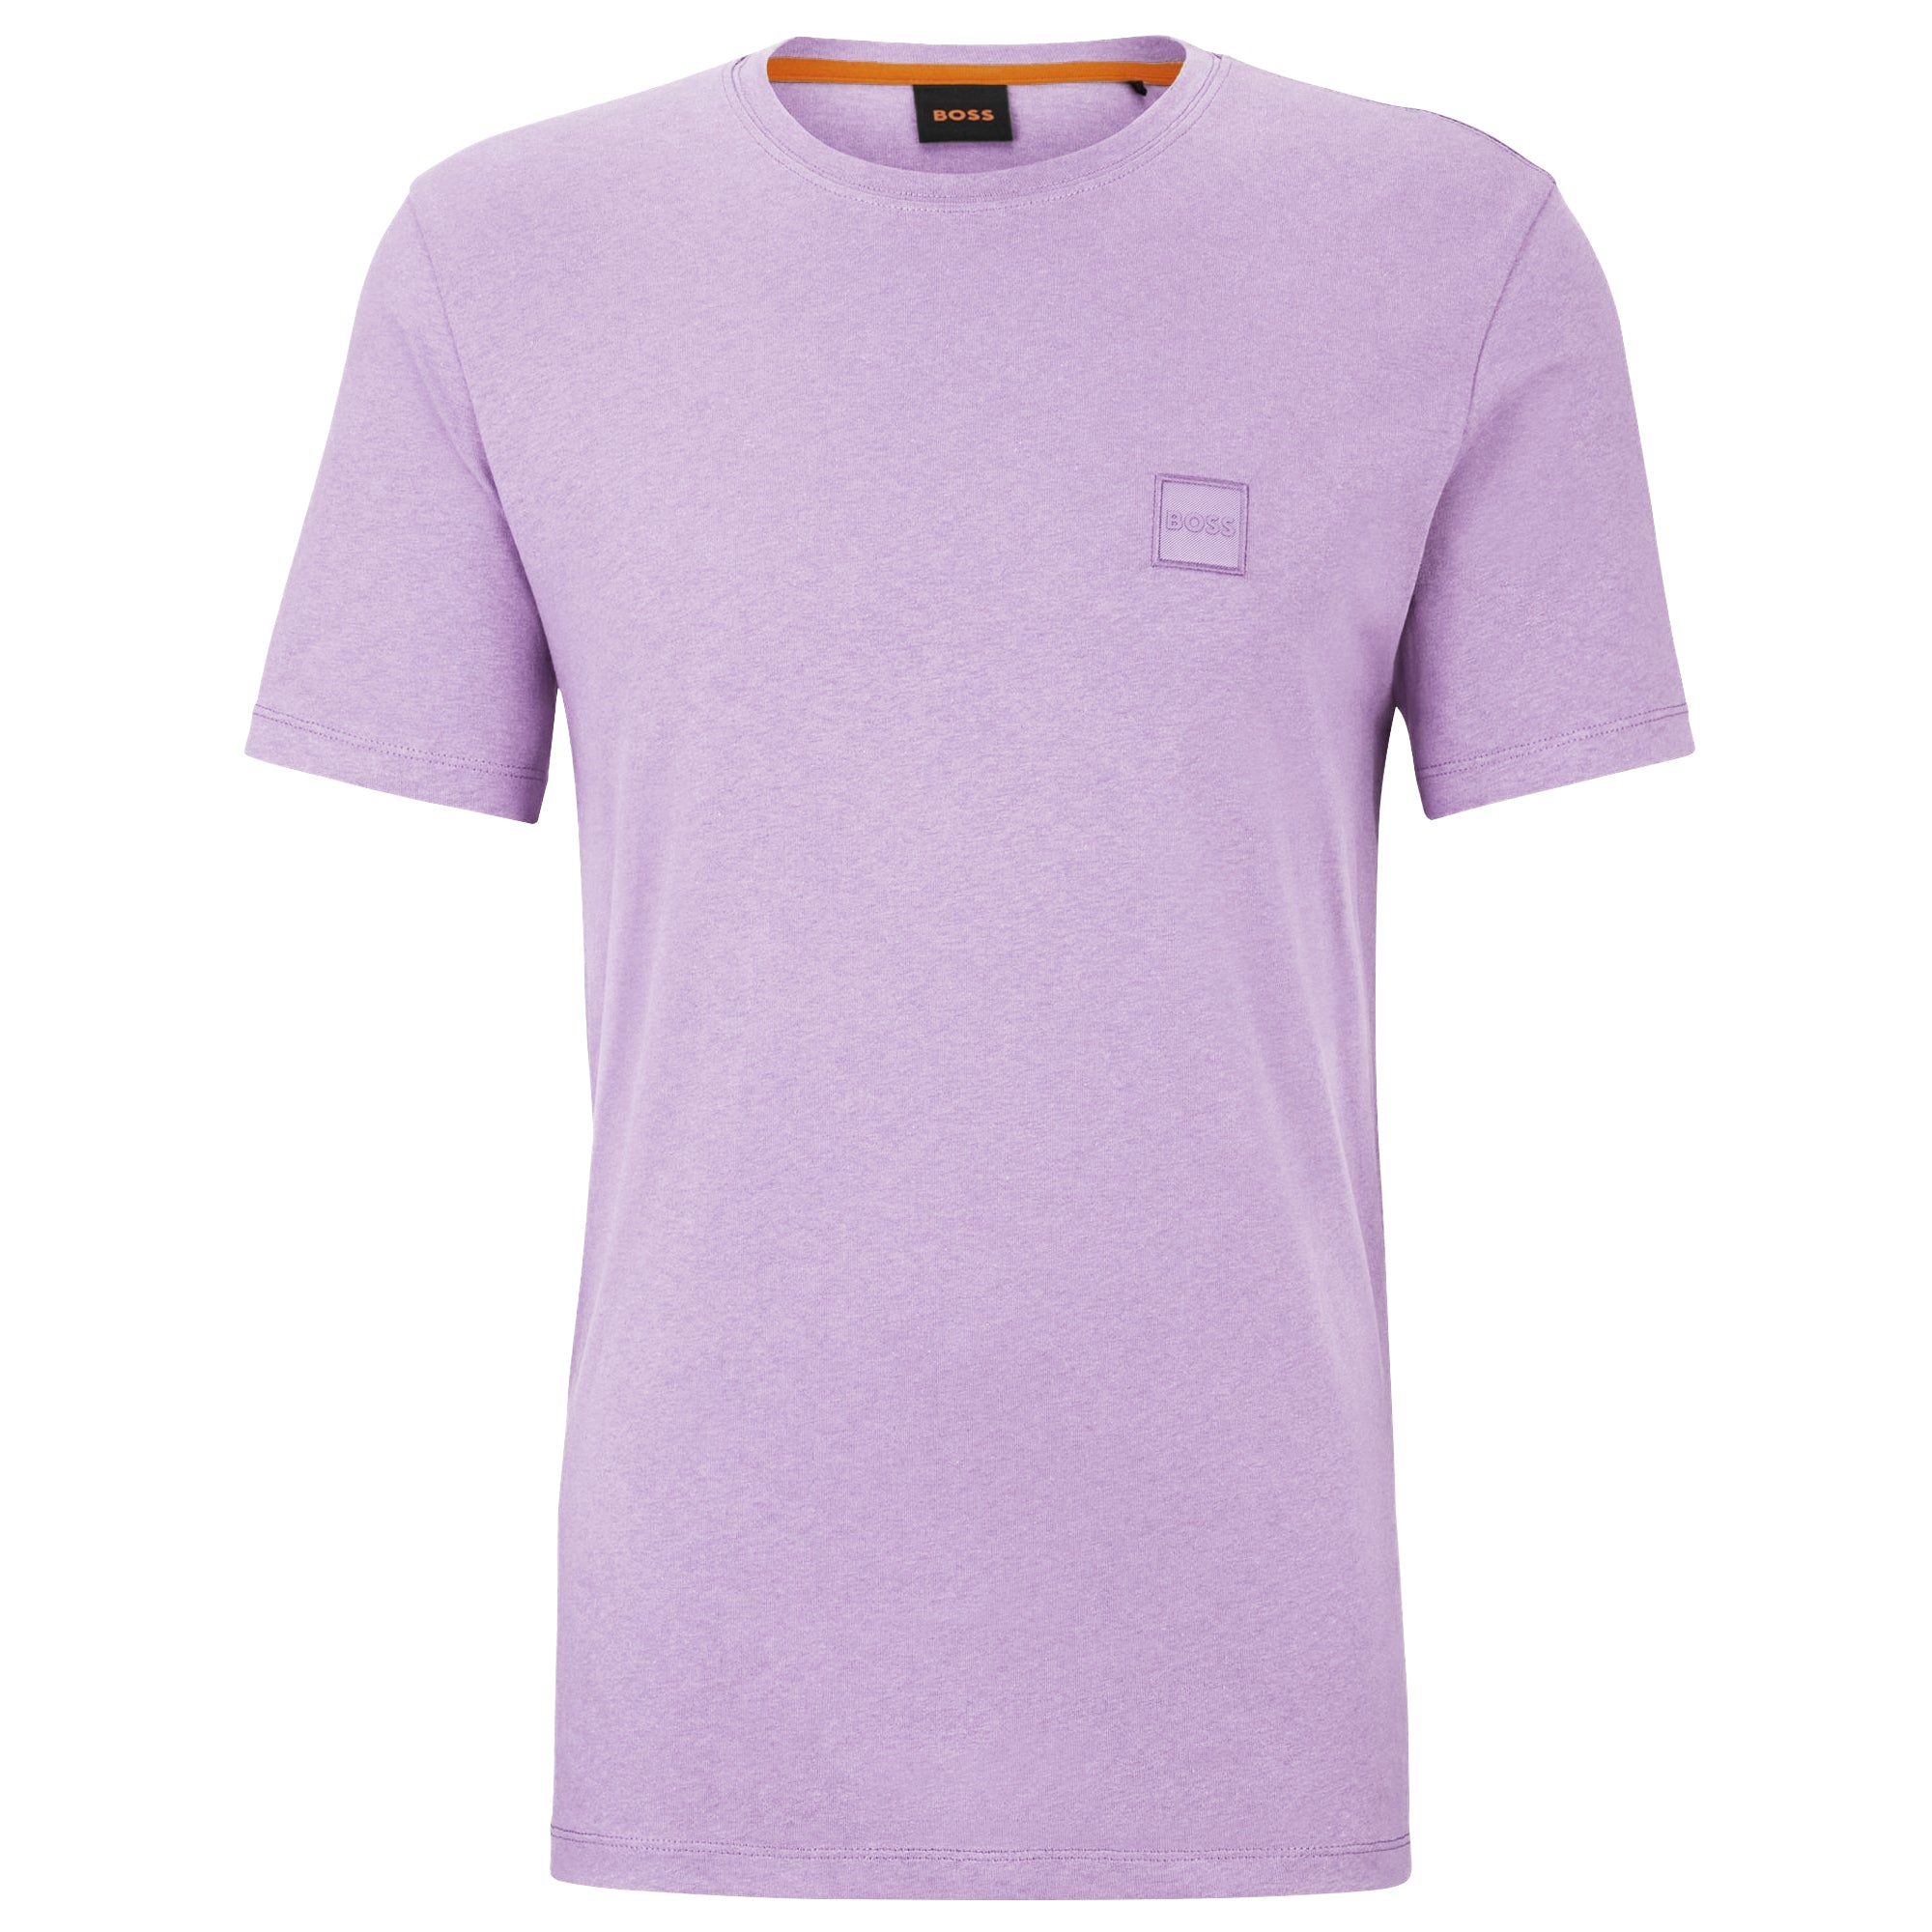 Boss New Tales T-Shirt - Pastel Purple